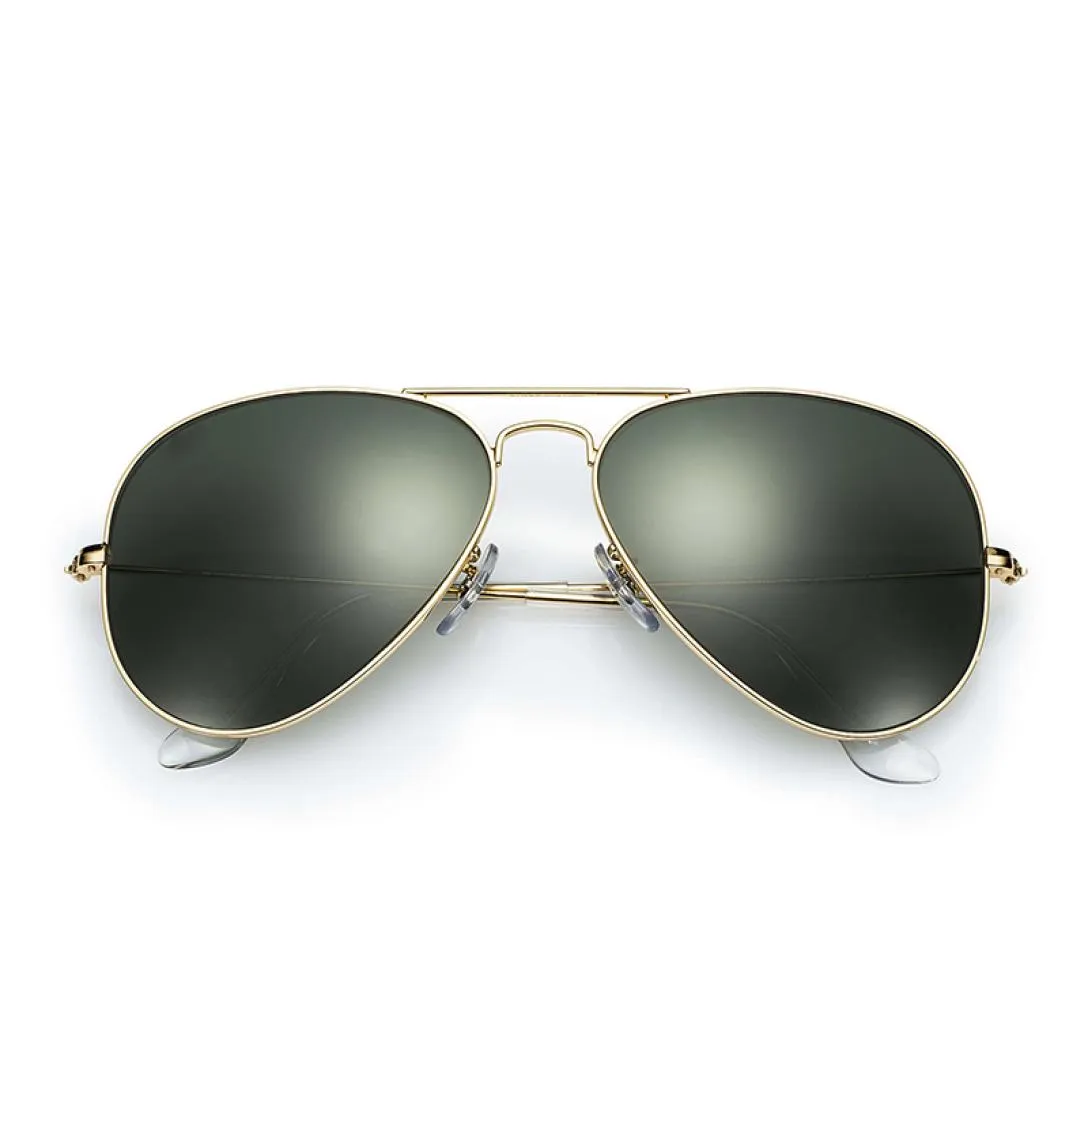 58mm 62mm lunettes de soleil hommes protection UV lunettes de soleil femmes conduite lentille noire lunettes de soleil verre Lensr accessoires gafas9118441